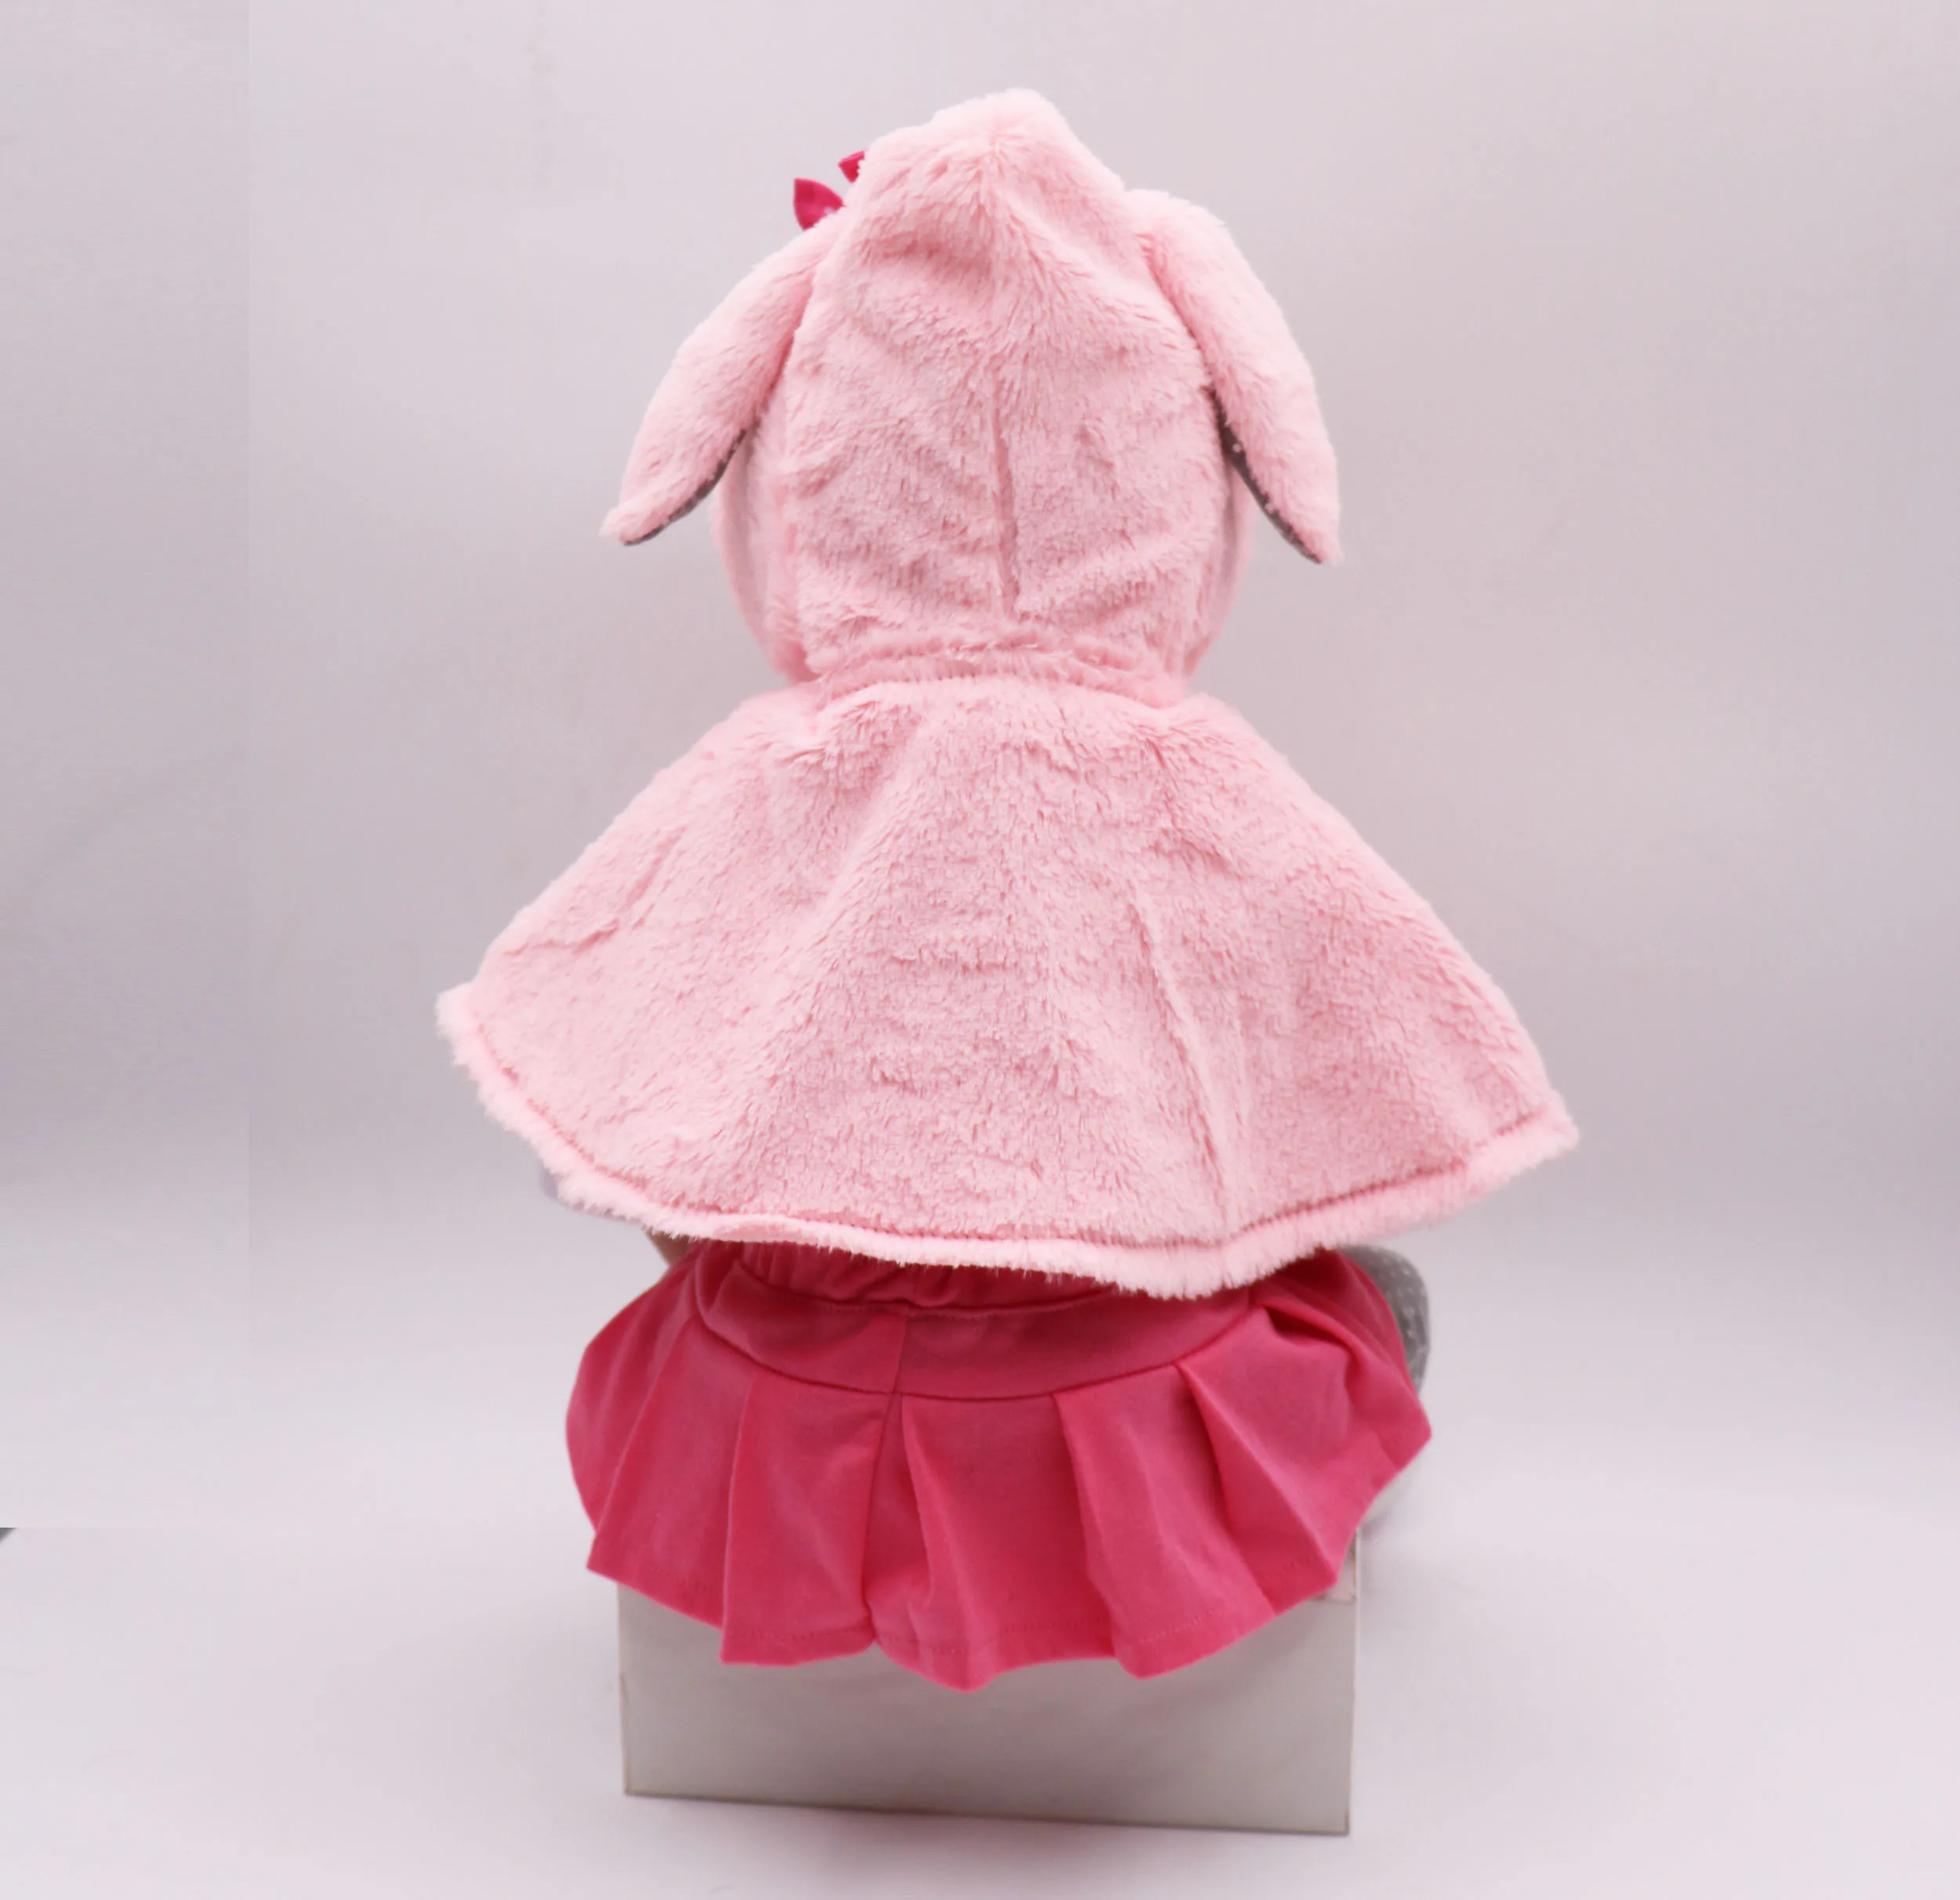 47 см Кукла реборн Реалистичная новорожденная девочка розовый кролик подарит